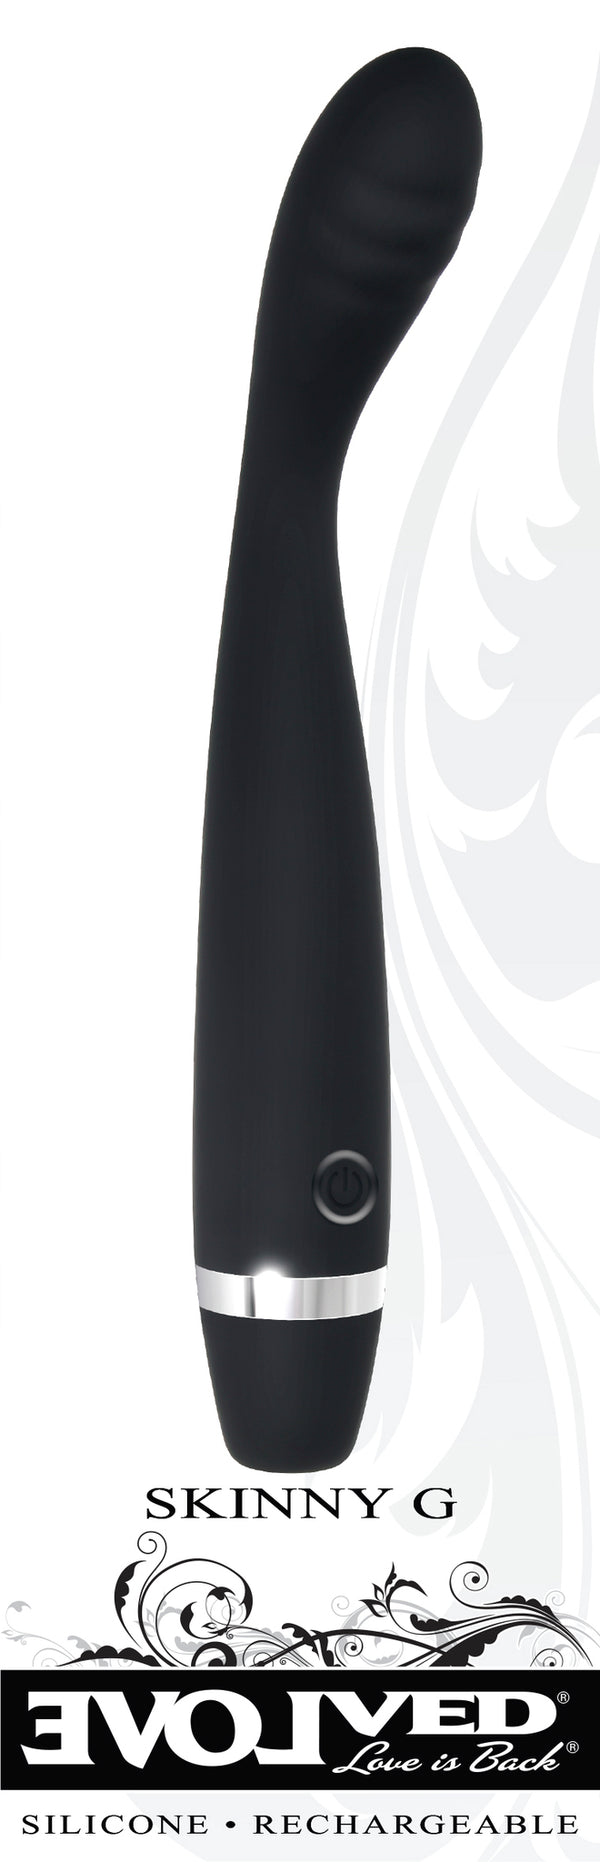 Evolved Novelties Evolved Skinny G G-Spot Vibrator Black at $27.99